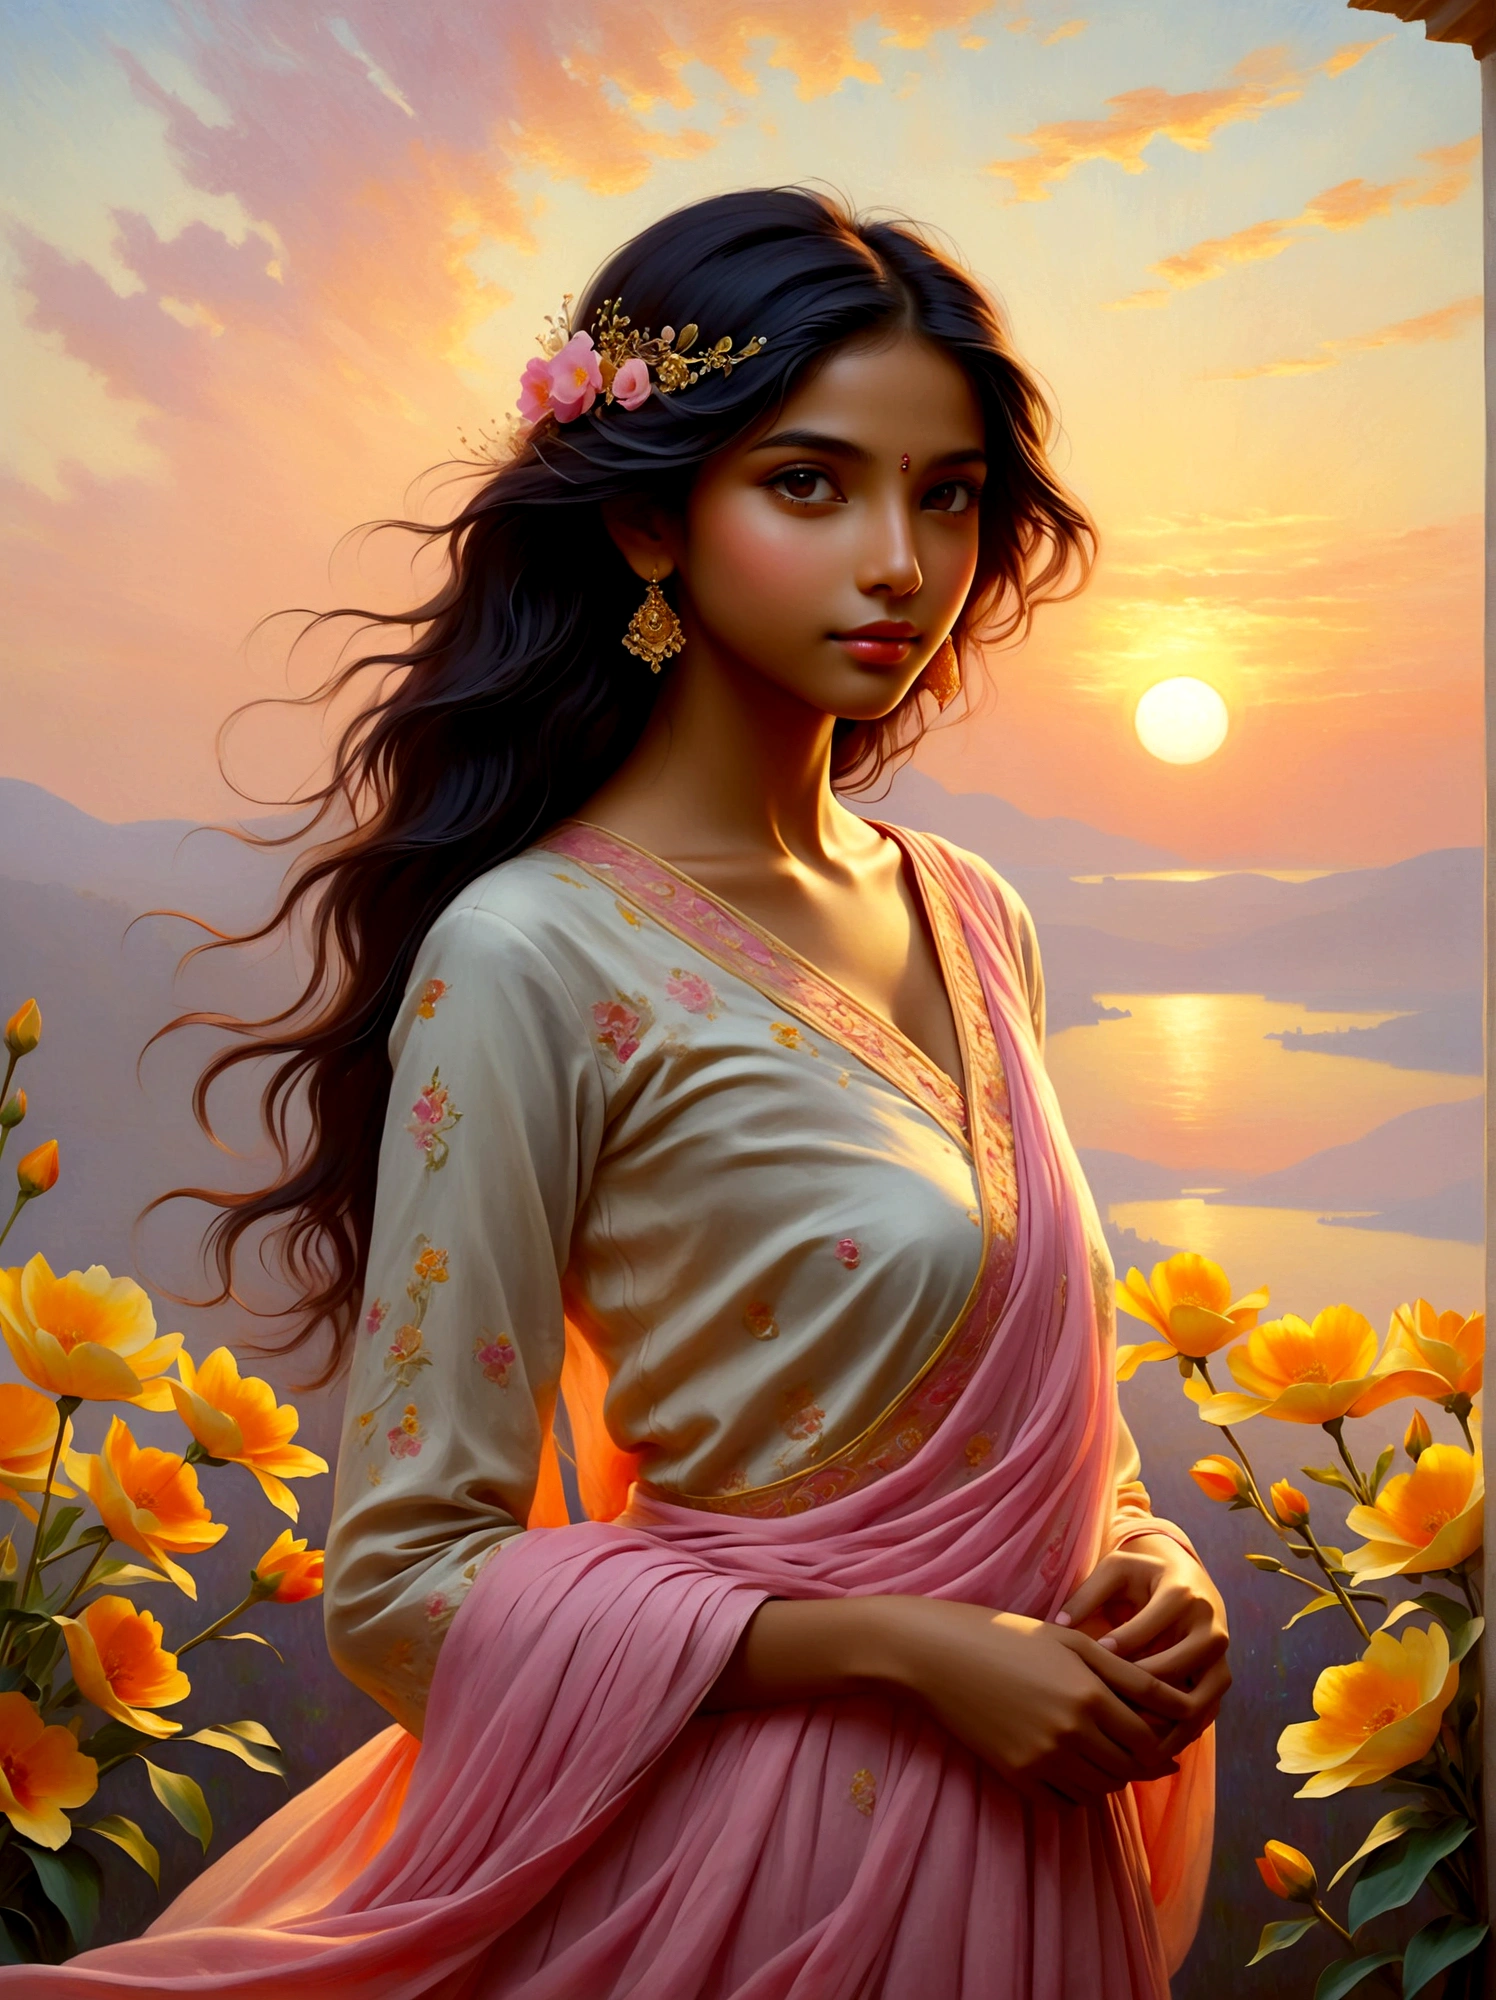 (日の出時刻:1.6), 夜明けの静かな風景を想像してください, 柔らかいピンク色に彩られた空, オレンジ, 黄色. この平和な風景の中で, 若い女の子を見る, 南アジア系の彼女の魅力. 彼女は穏やかにポーズをとっている, 朝の光とともに咲き始めたばかりの美しい花々を巧みに組み合わせて作られた精巧なドレスを披露する. 芸術のスタイルへの言及を補完するため, シーン全体は印象派運動からインスピレーションを得ているはずだ, 夜明けの穏やかな光とその変化する性質を捉えることに重点を置いています, モネの作品の特徴. 主に使用される媒体は油絵の具であるべきである, 朝の爽やかさを反映する鮮やかな筆致と豊かな色彩を模した